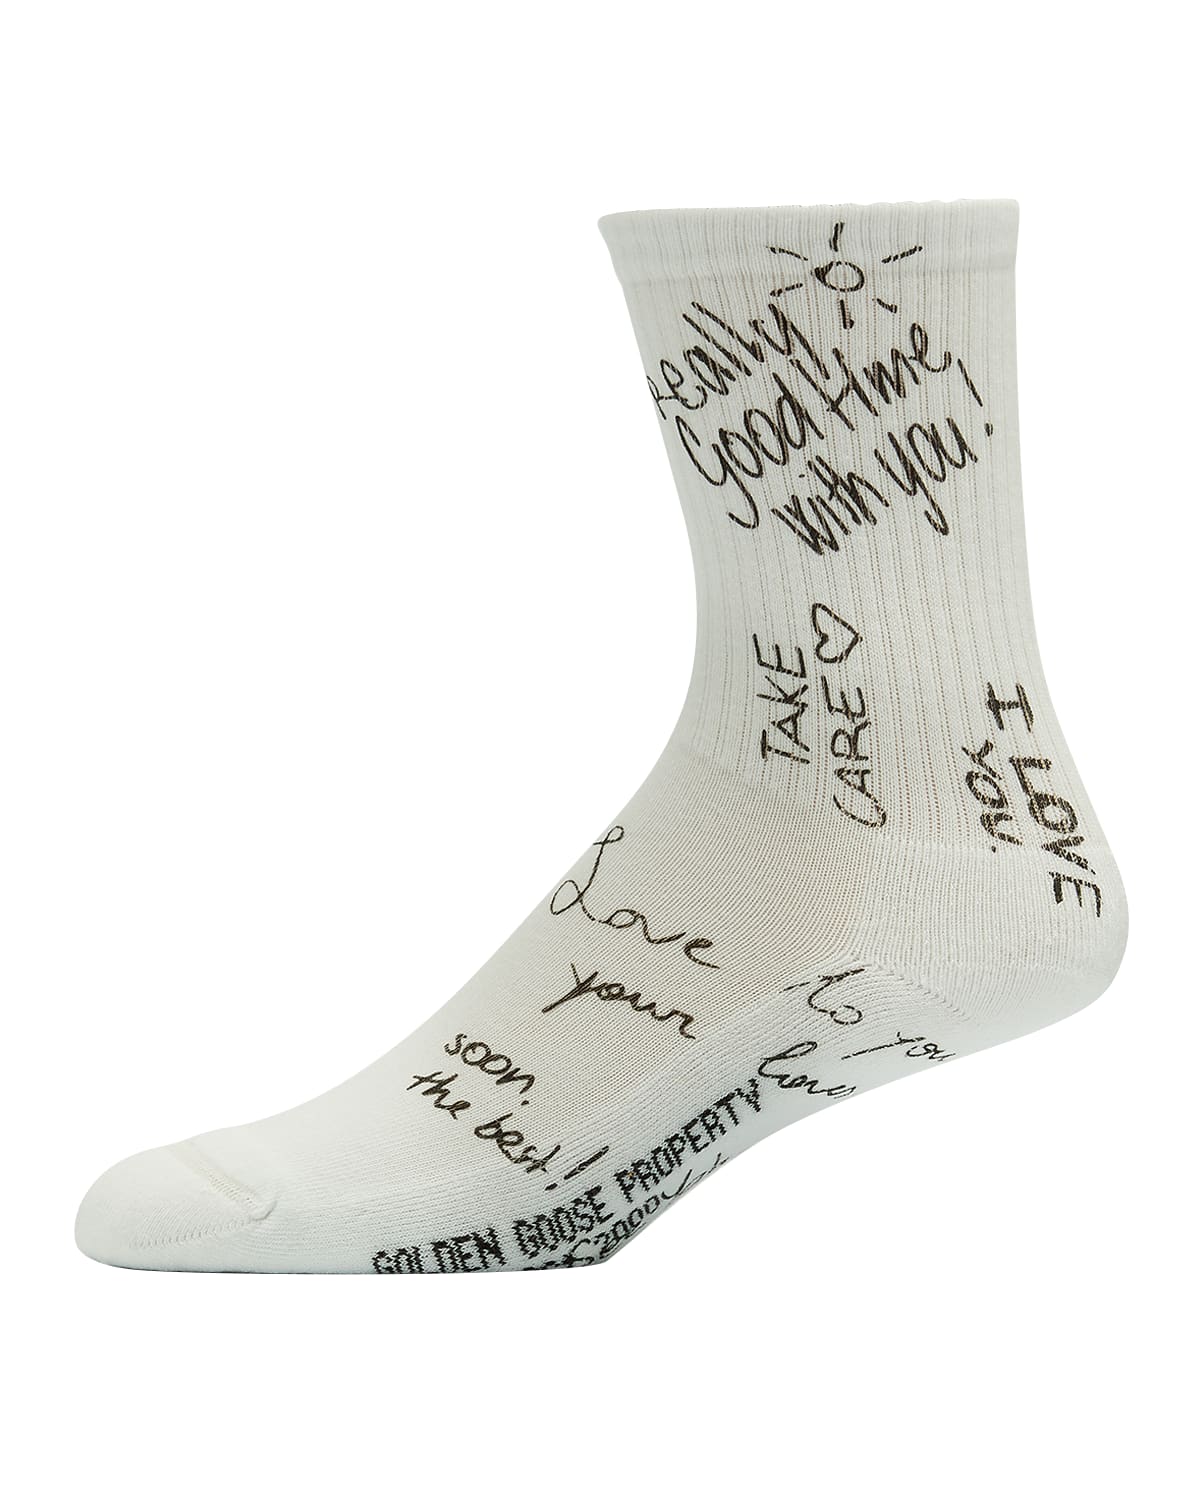 Handwritten Message Ribbed Tube Socks